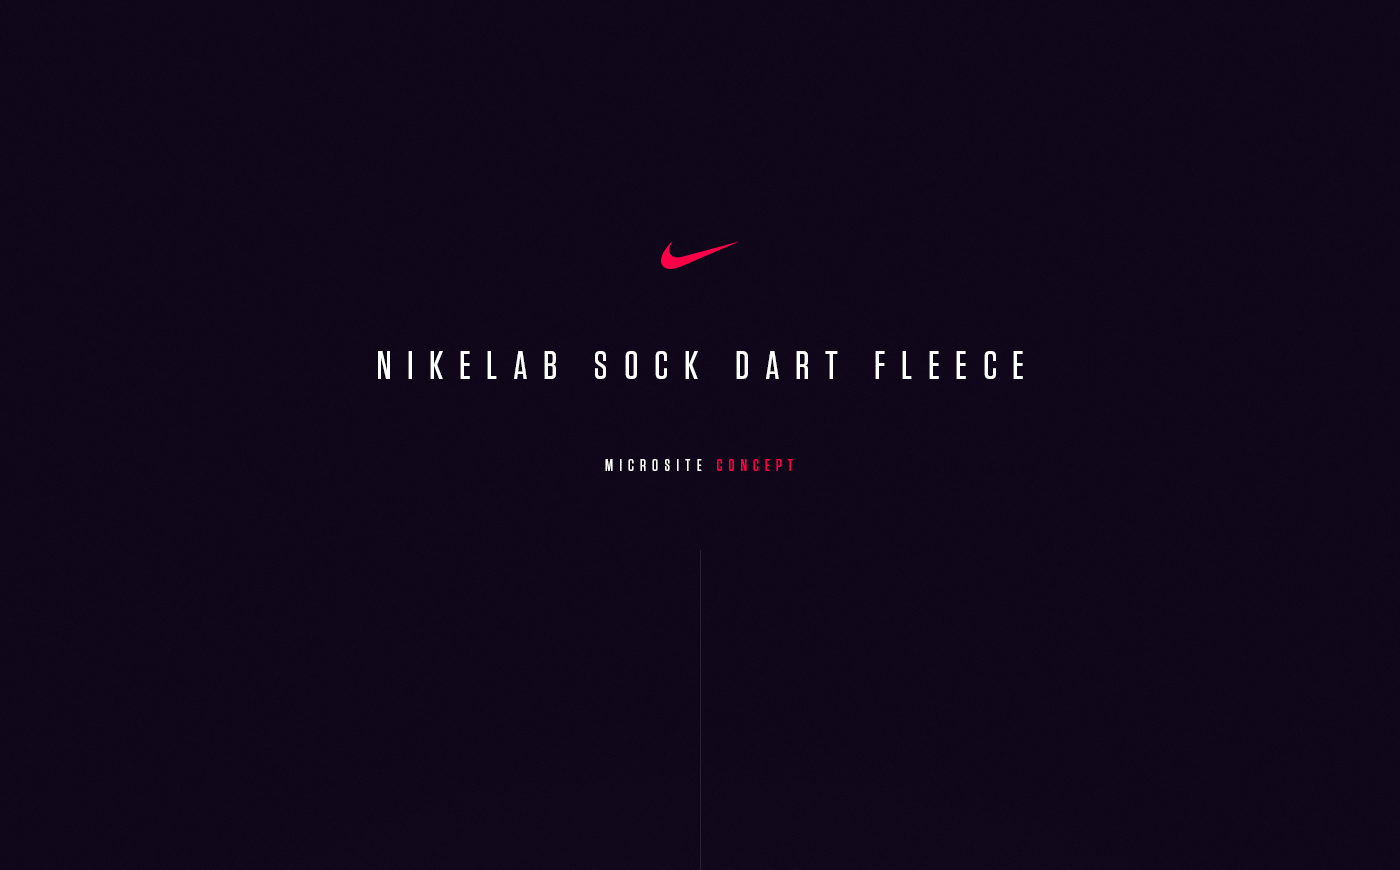 Nike nikelab Sock Dart Fleece Men's shoe mulberry shoe sport futuristic microsite Web Website site footwear hellowiktor